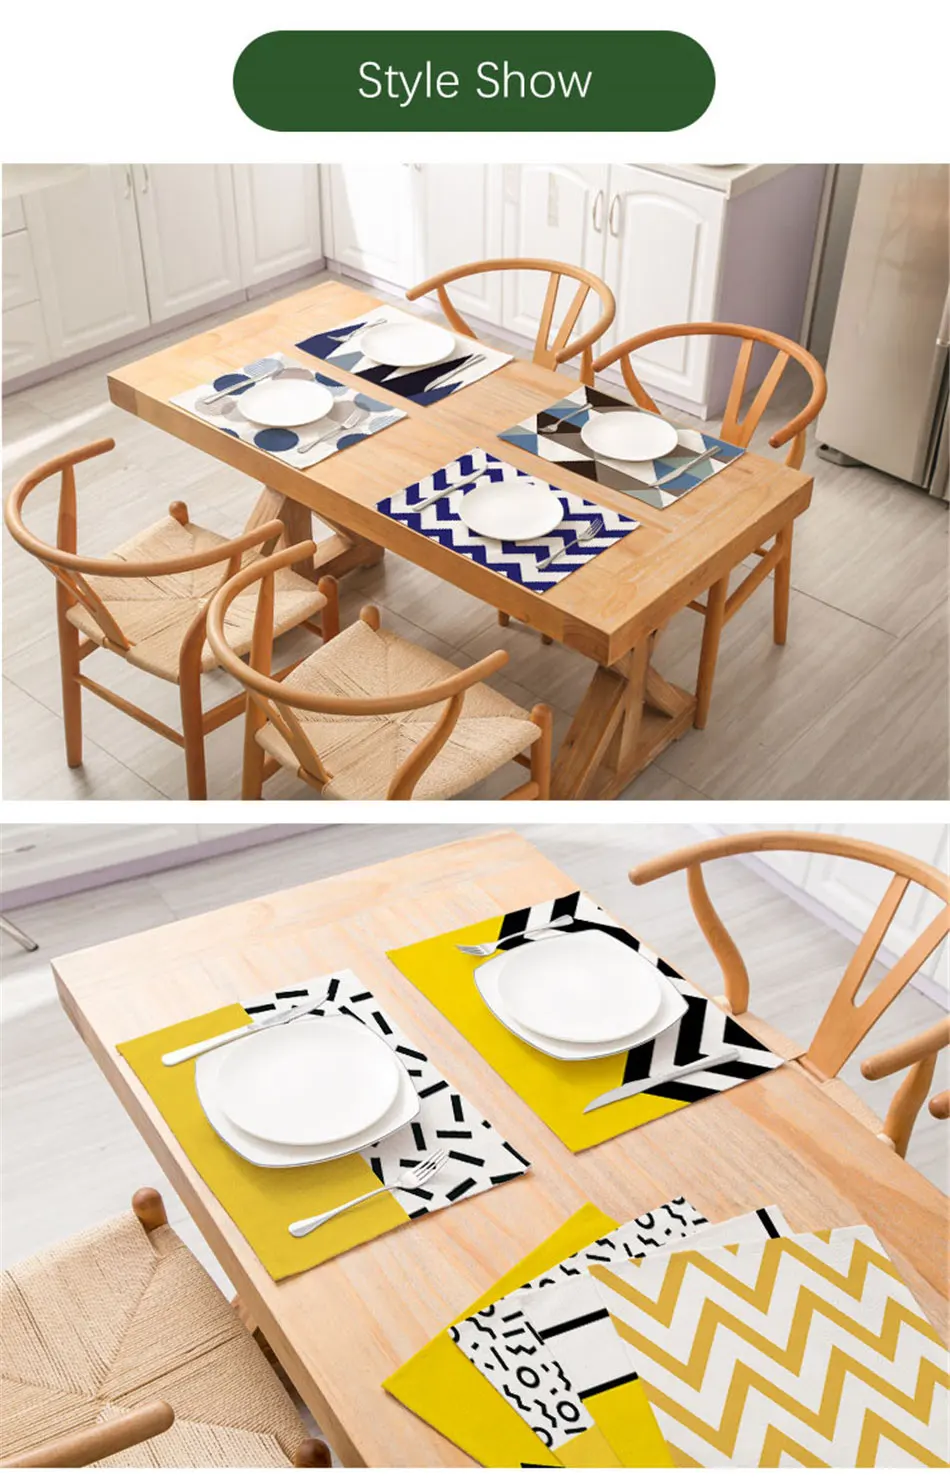 VOGVIGO креативный коврик для кухонного стола с геометрическим принтом, коврик для обеденного стола, подстаканник из хлопка, льна, полиэстера, подстаканник